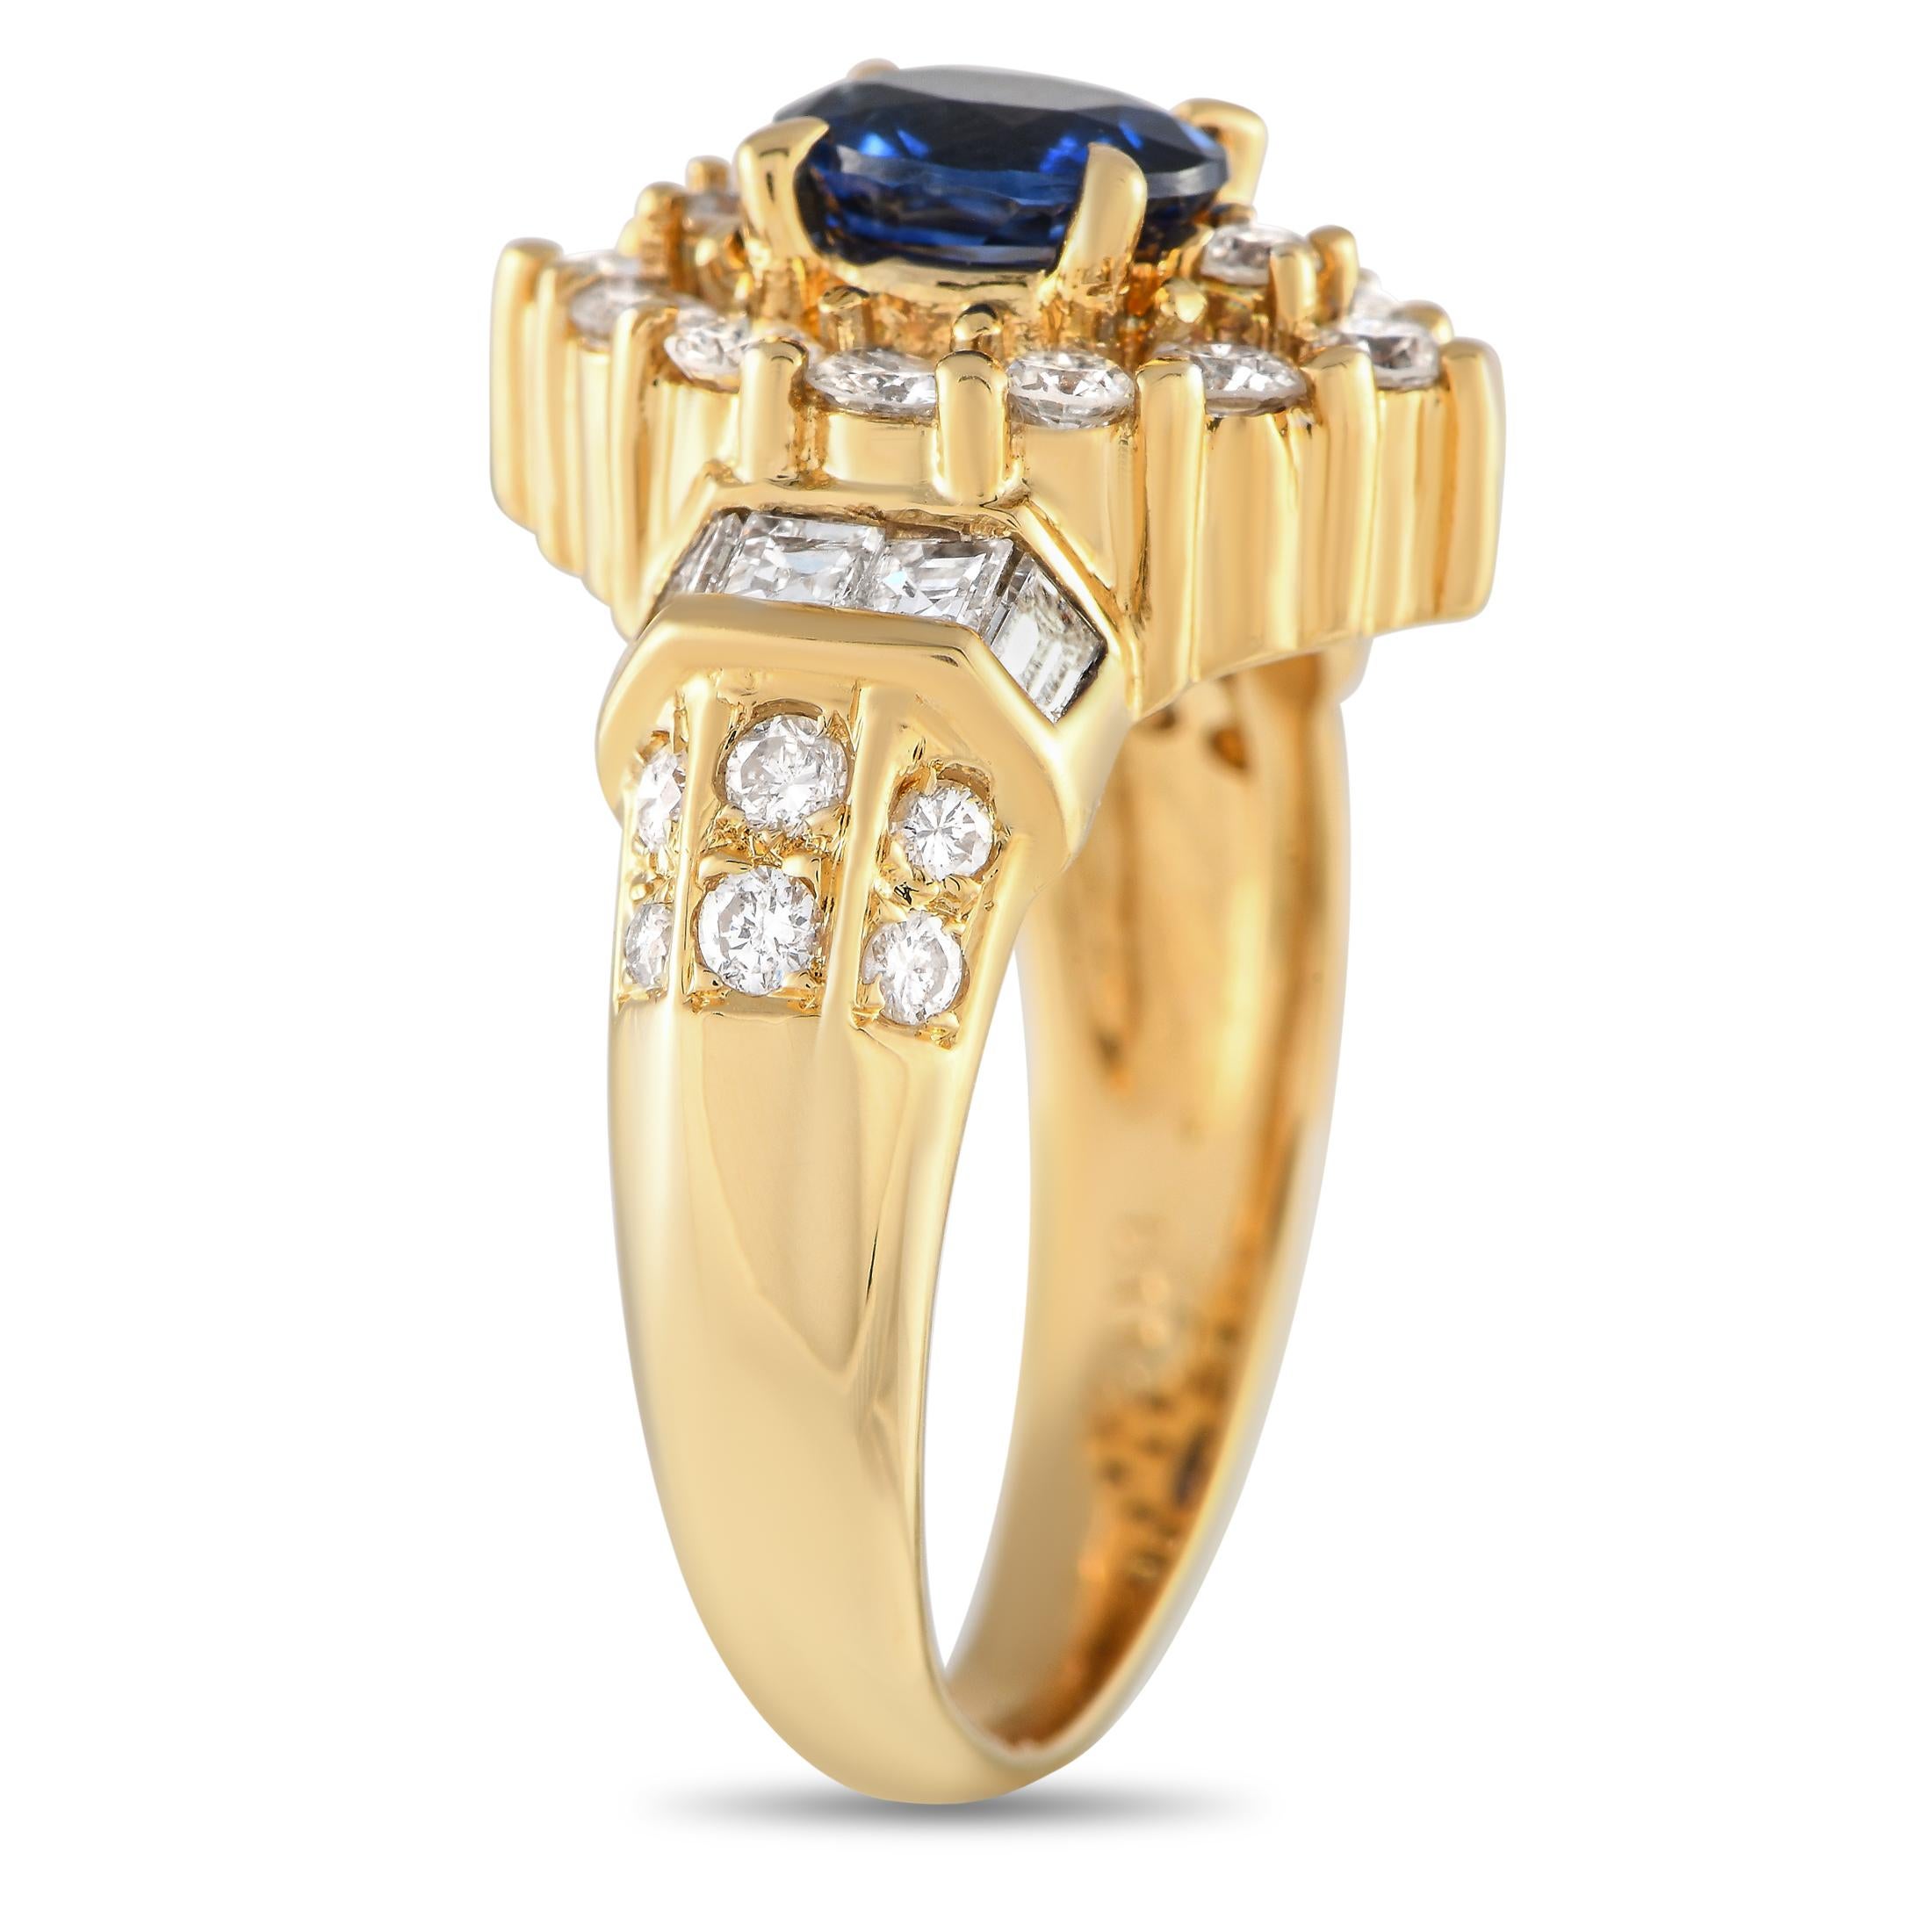 Dieser opulente Ring aus 18 Karat Gelbgold ist ein luxuriöses Schmuckstück, das immer wieder für Aufsehen sorgen wird. Ein fesselnder 0,97 Karat Saphir Mittelstein ist von funkelnden Diamant-Akzenten von insgesamt 1,12 Karat auf diesem